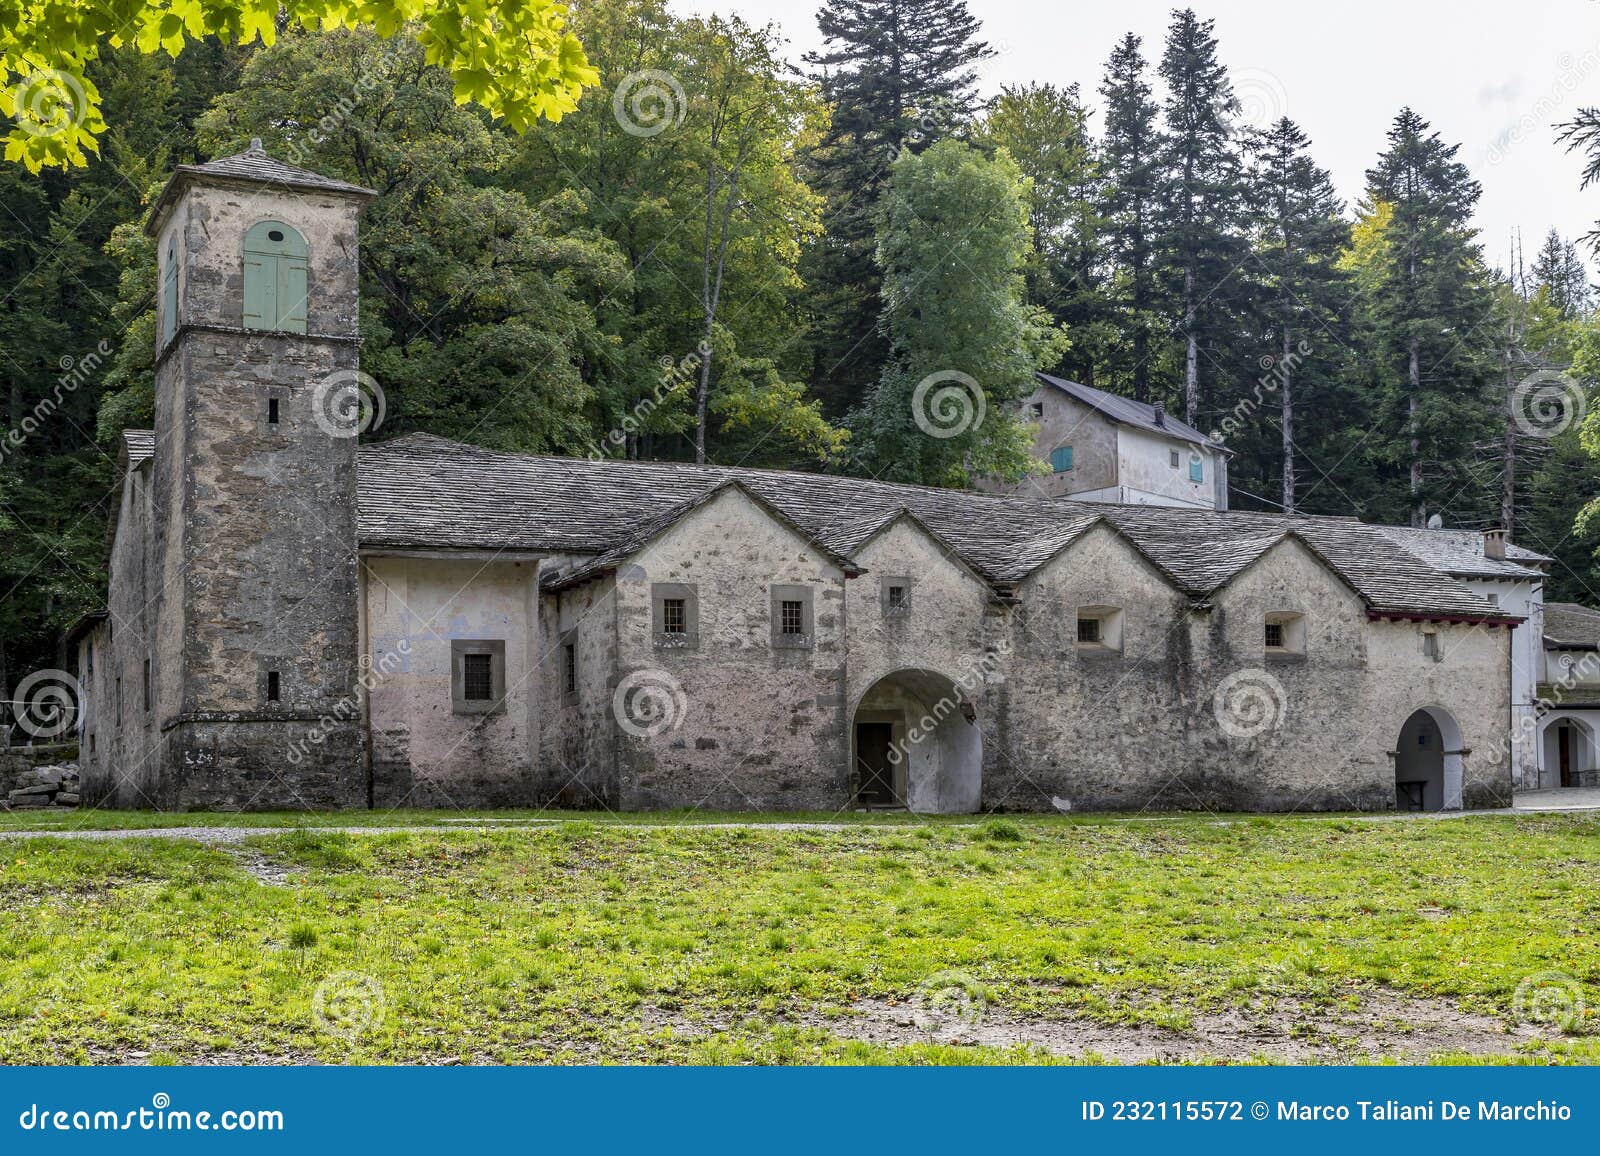 the ancient sanctuary of the madonna dell`acero in lizzano in belvedere, bologna, italy